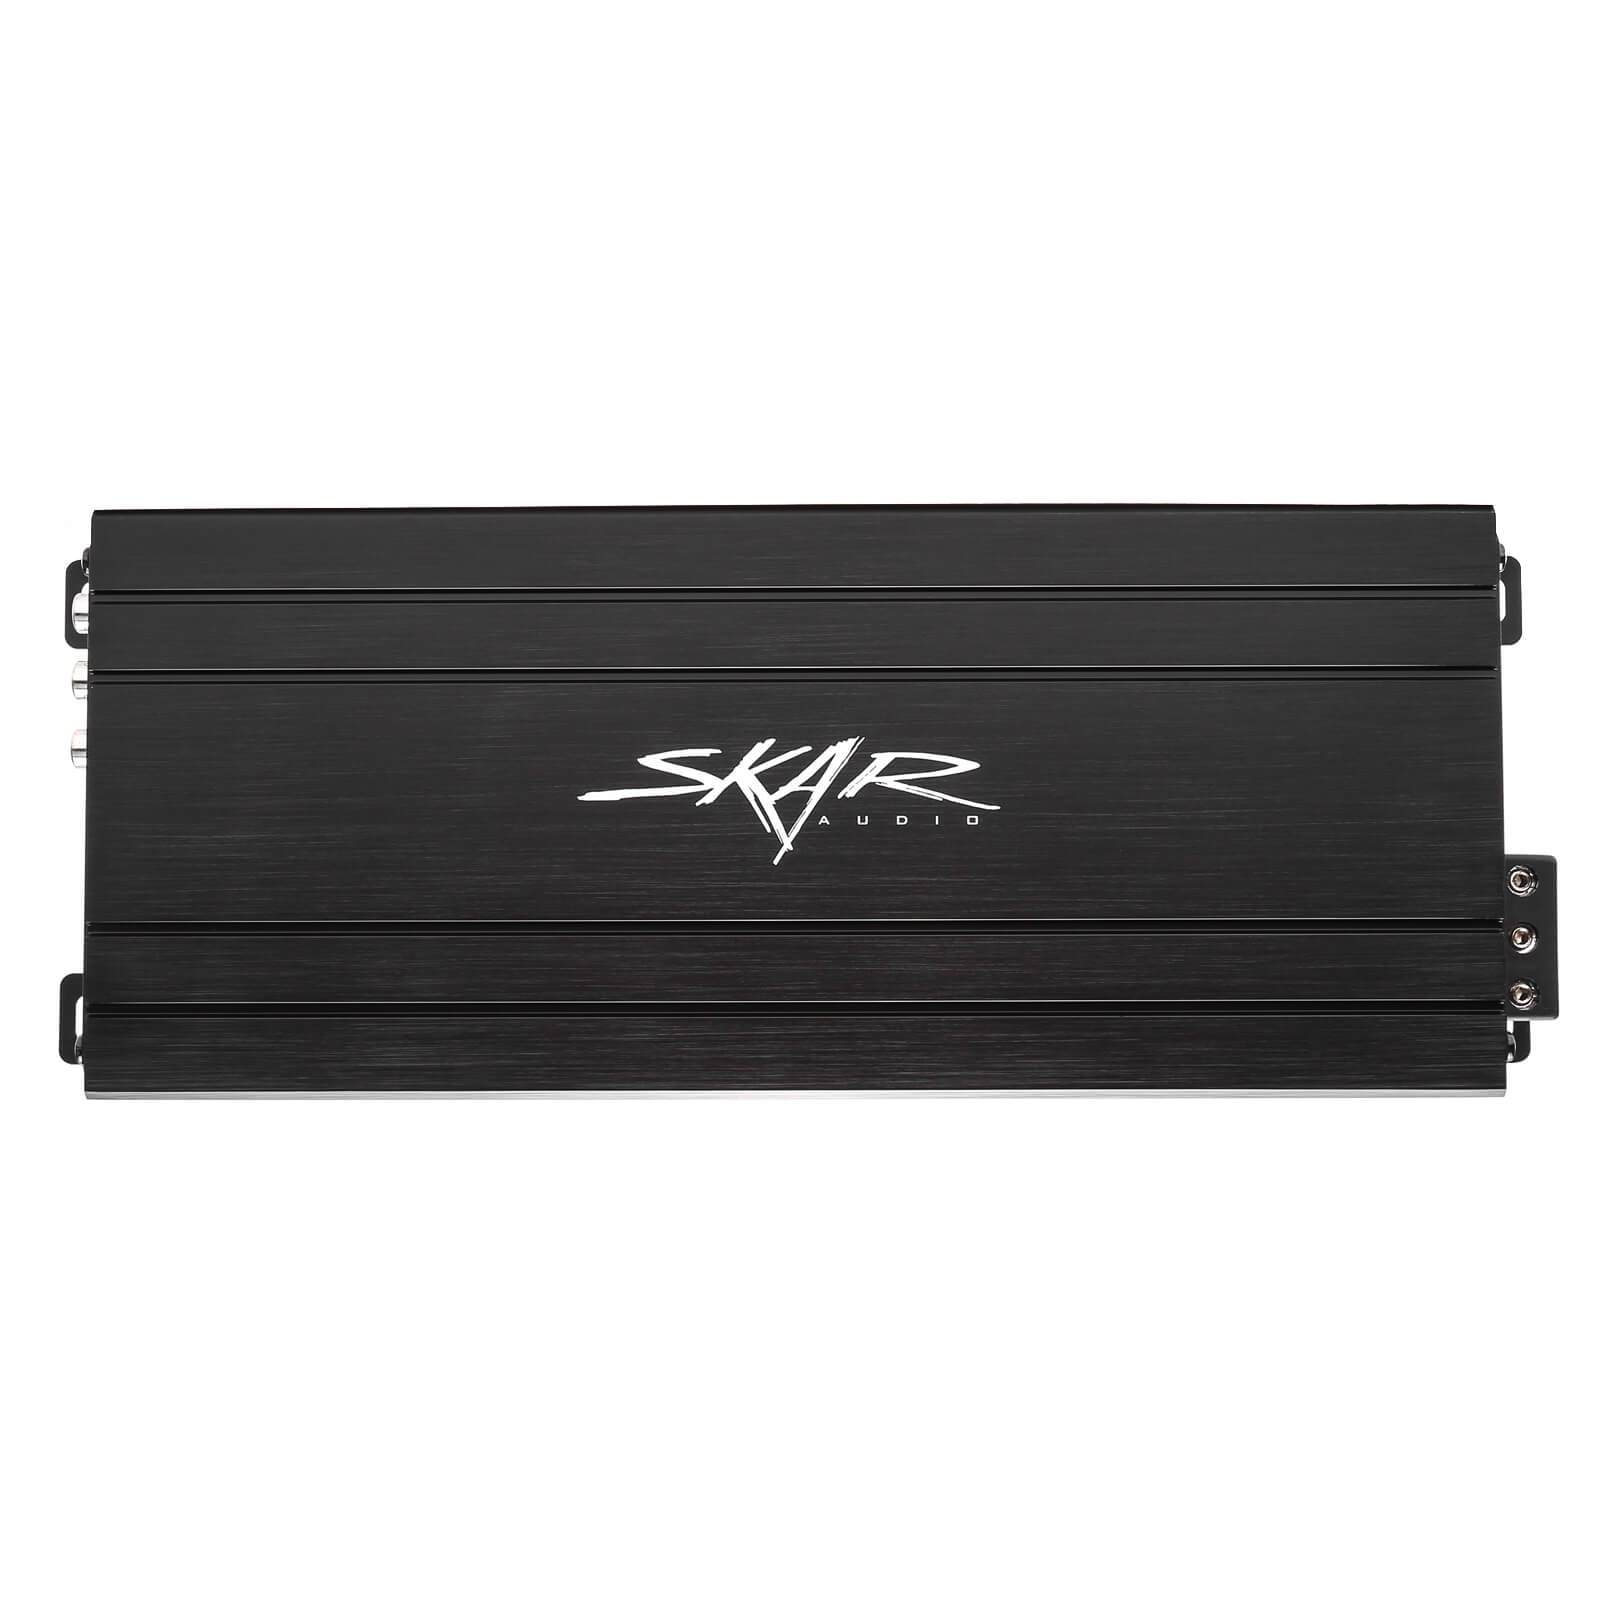 Skar Audio SK-M9005D 900 Watt Class D 5-Channel Car Amplifier - Front View